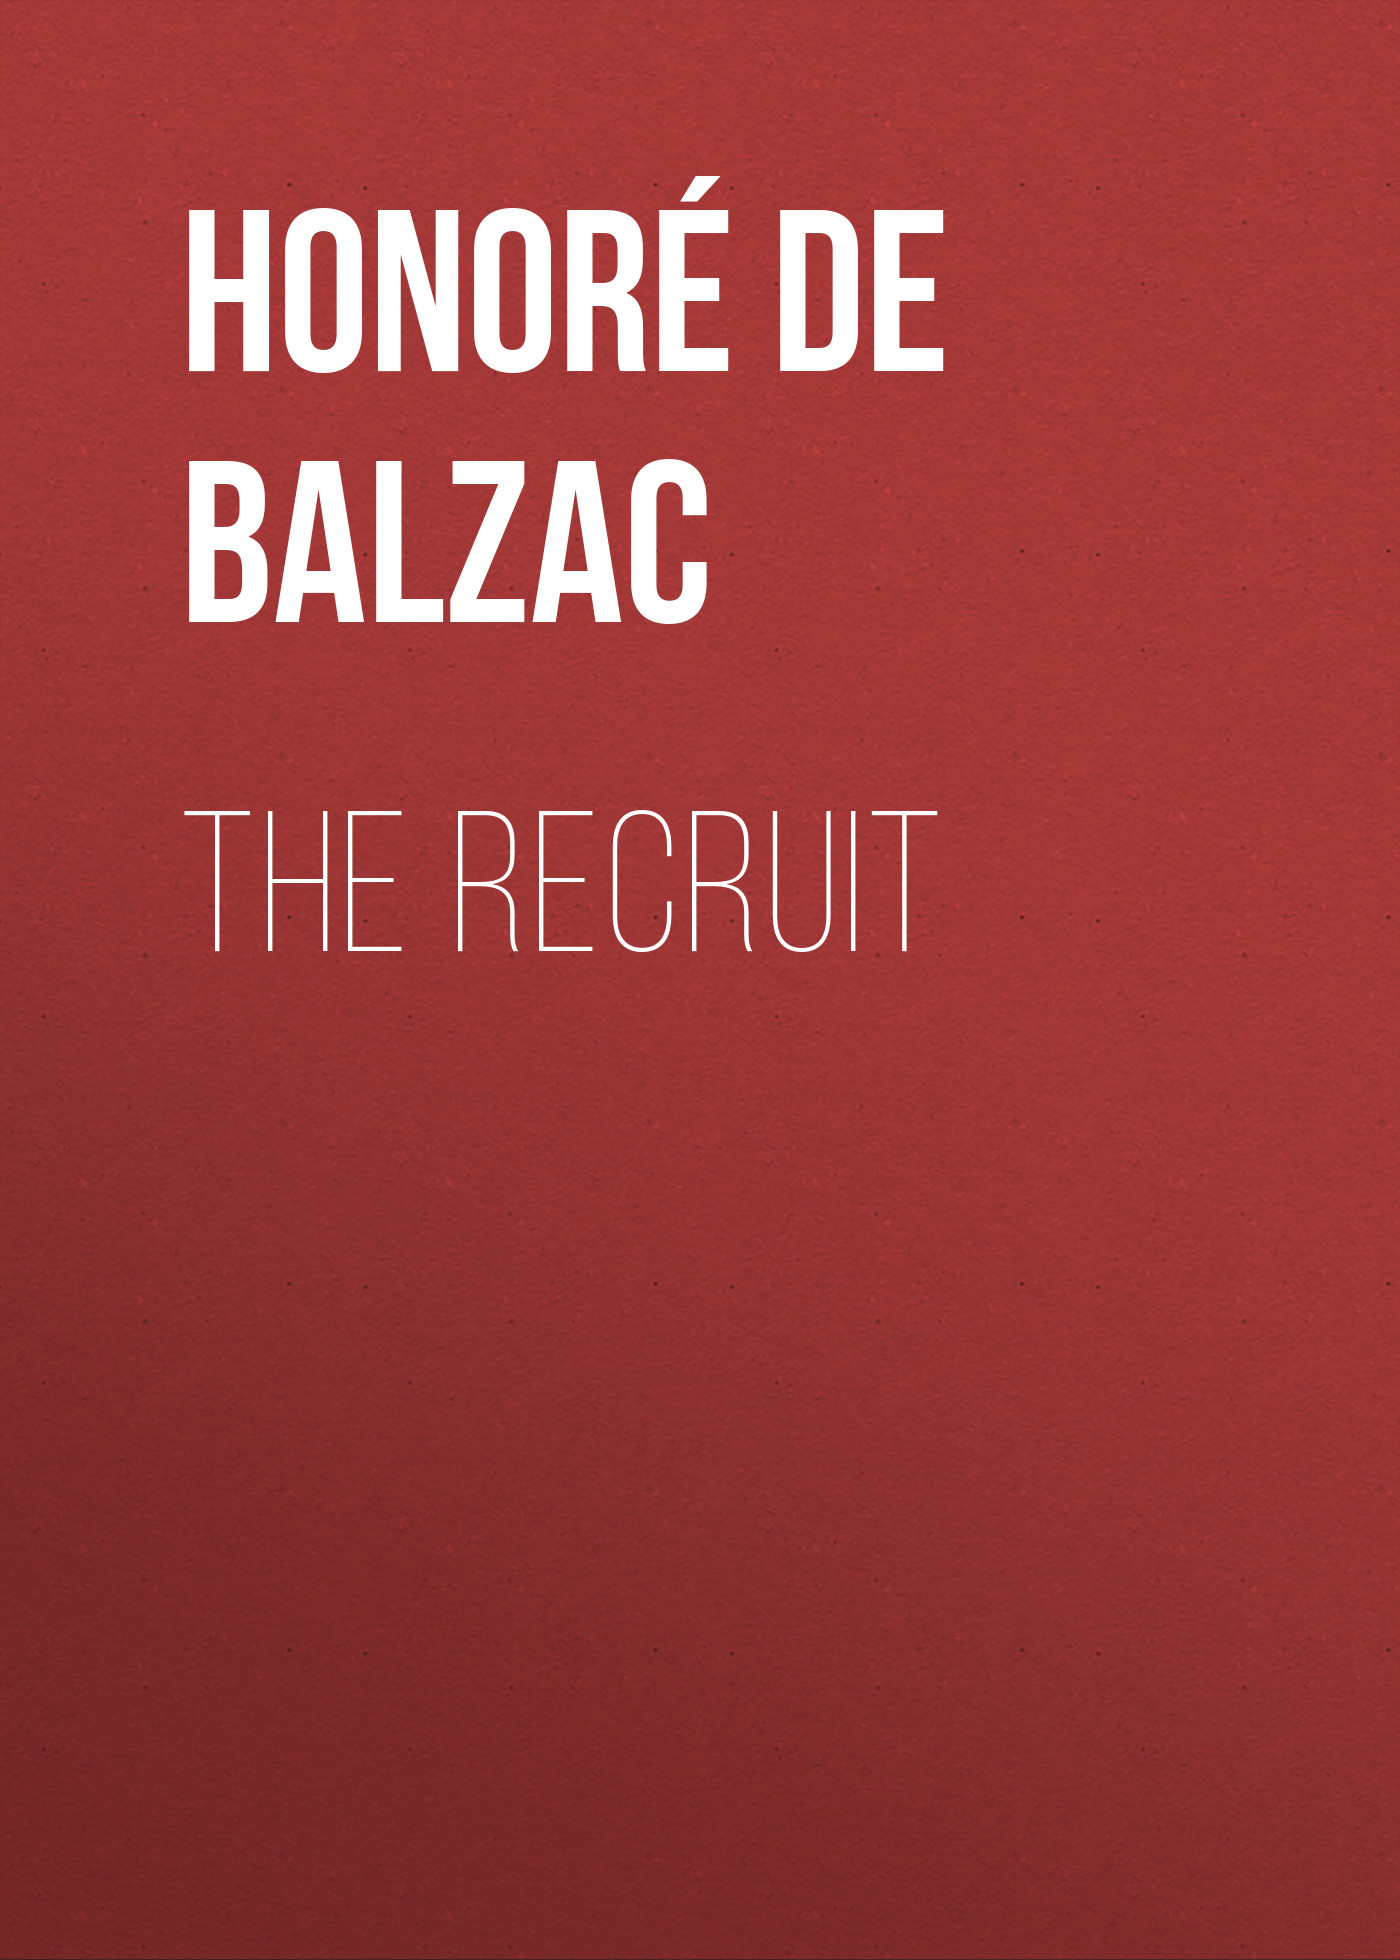 Книга The Recruit из серии , созданная Honoré Balzac, может относится к жанру Литература 19 века, Зарубежная старинная литература, Зарубежная классика. Стоимость электронной книги The Recruit с идентификатором 25020771 составляет 0 руб.